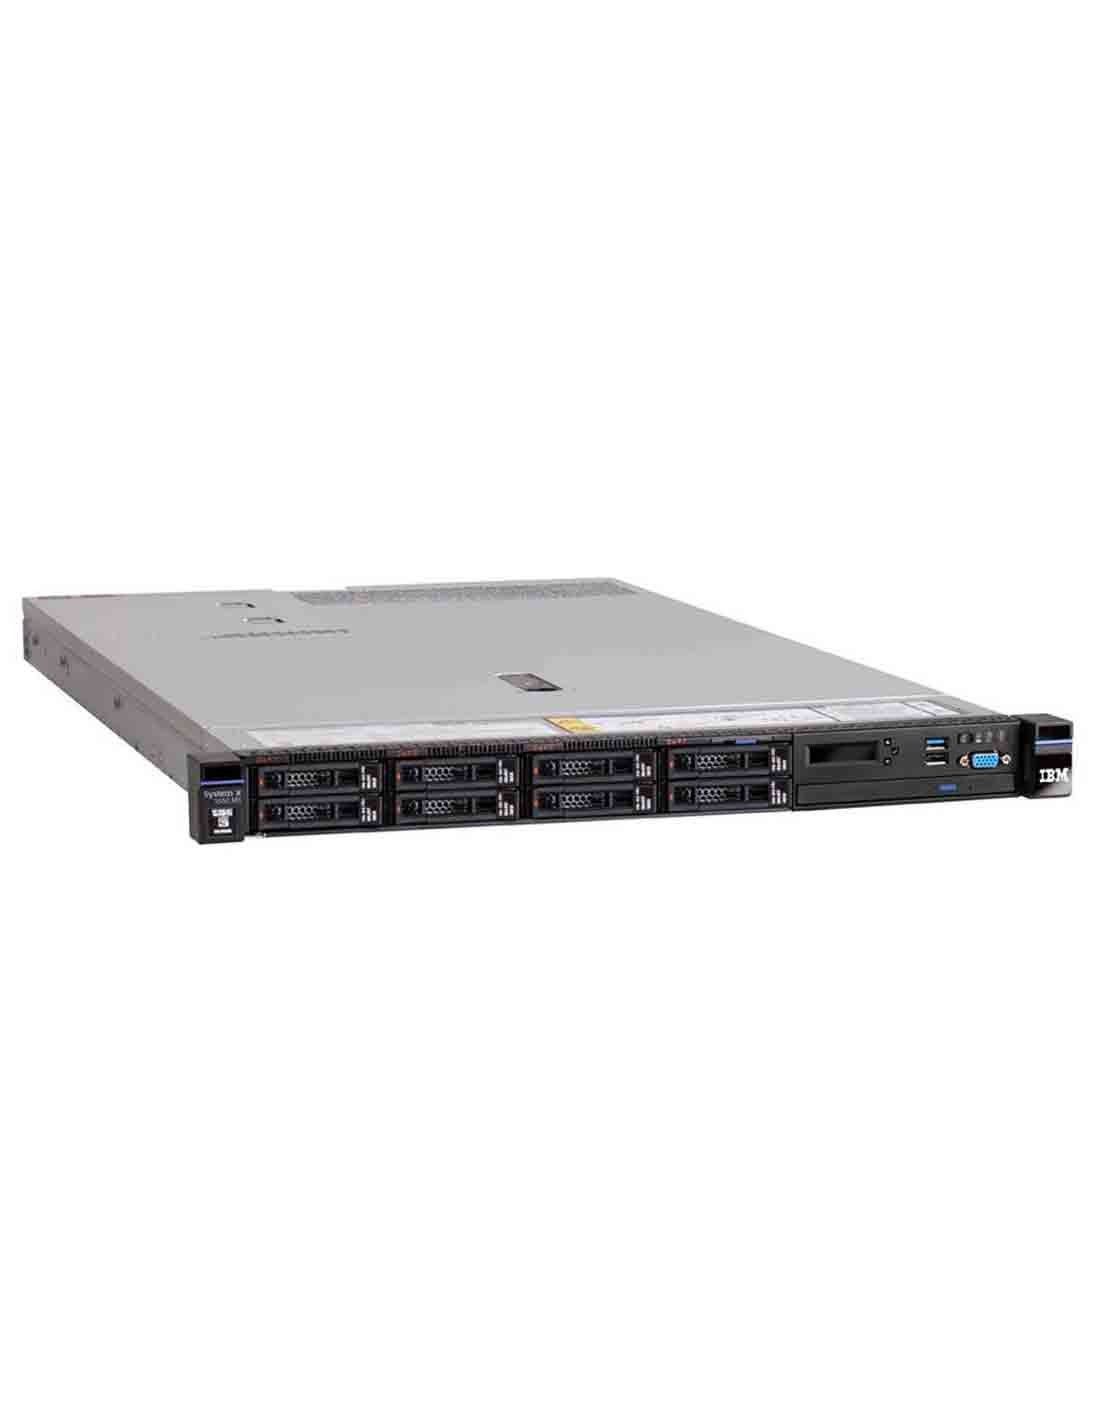 Lenovo x3550 M5 Rack Server E5-2620 v4 8869E3G at a Cheap Price in Dubai UAE